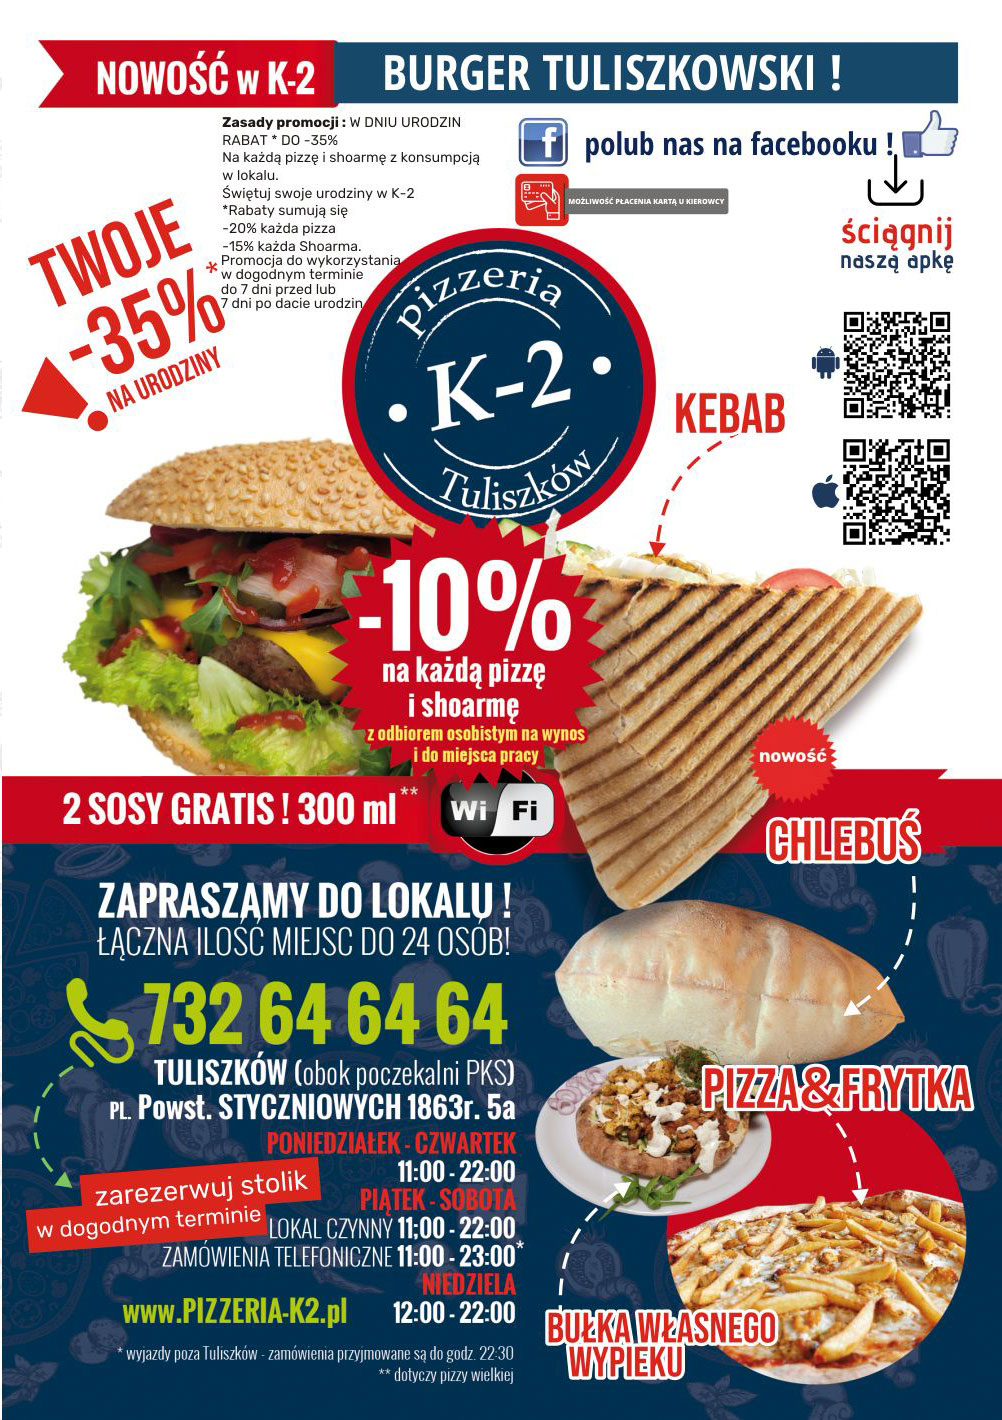 Telepizza K2 Tuliszków